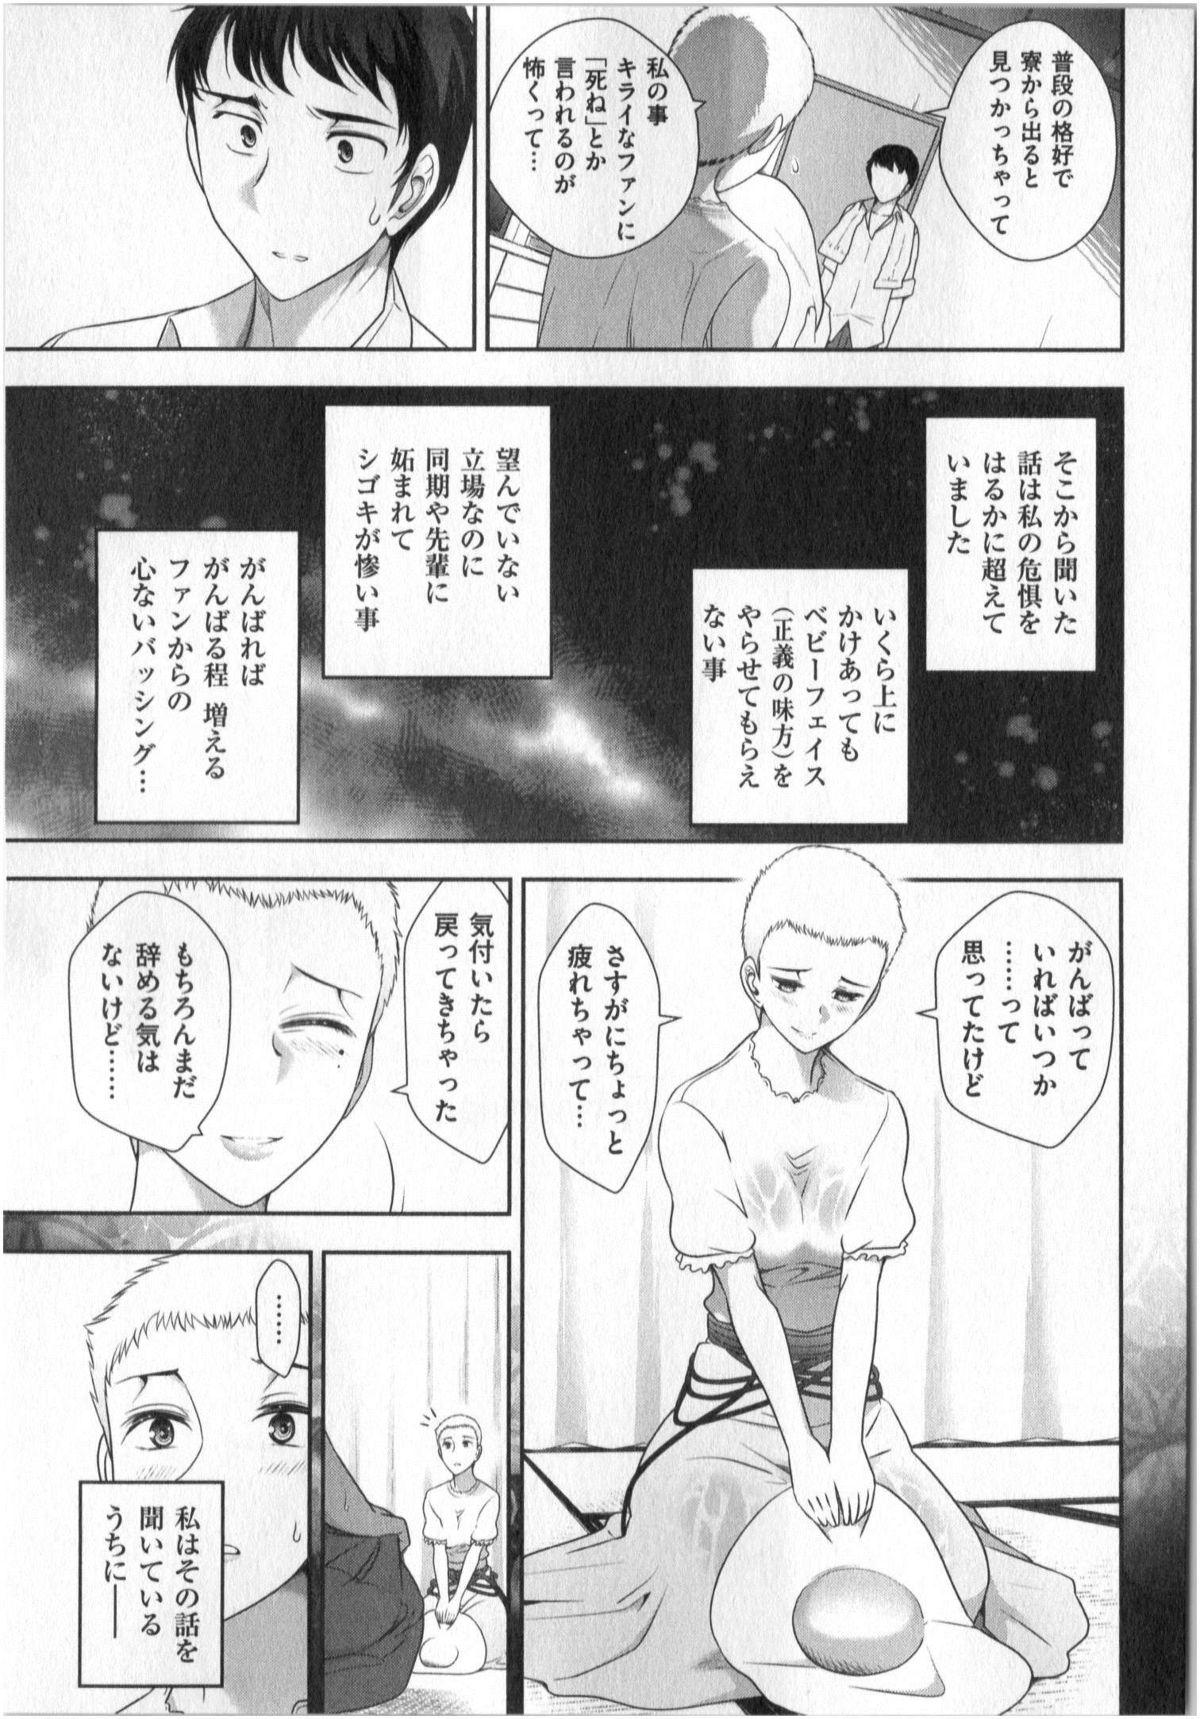 Yonimo Ecchi na Toshidensetsu vol. 01 92